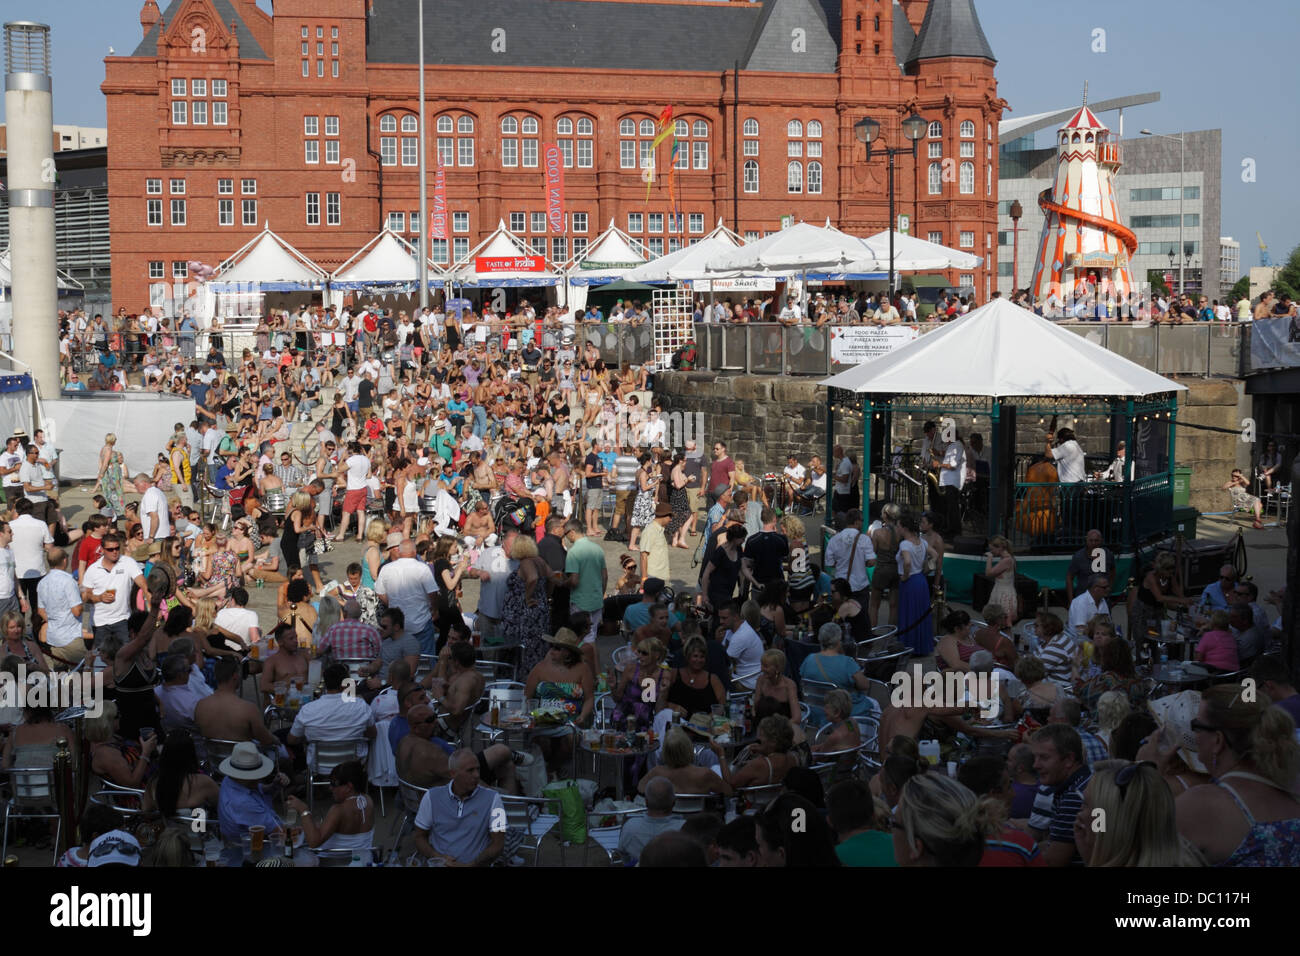 Une foule de personnes qui profitent du soleil d'été au Cardiff Bay Food and Drink Festival.Bassin ovale.Pays de Galles Royaume-Uni Banque D'Images